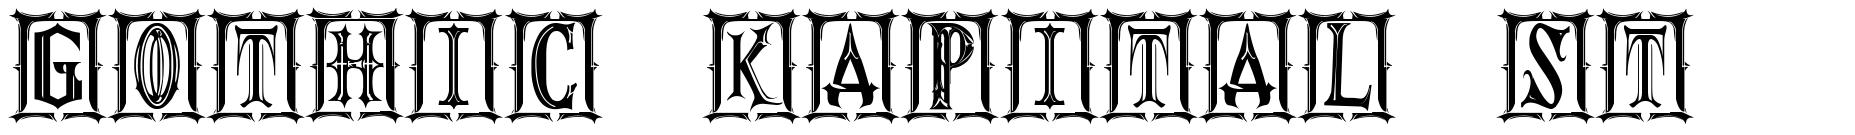 Gothic Kapital ST font